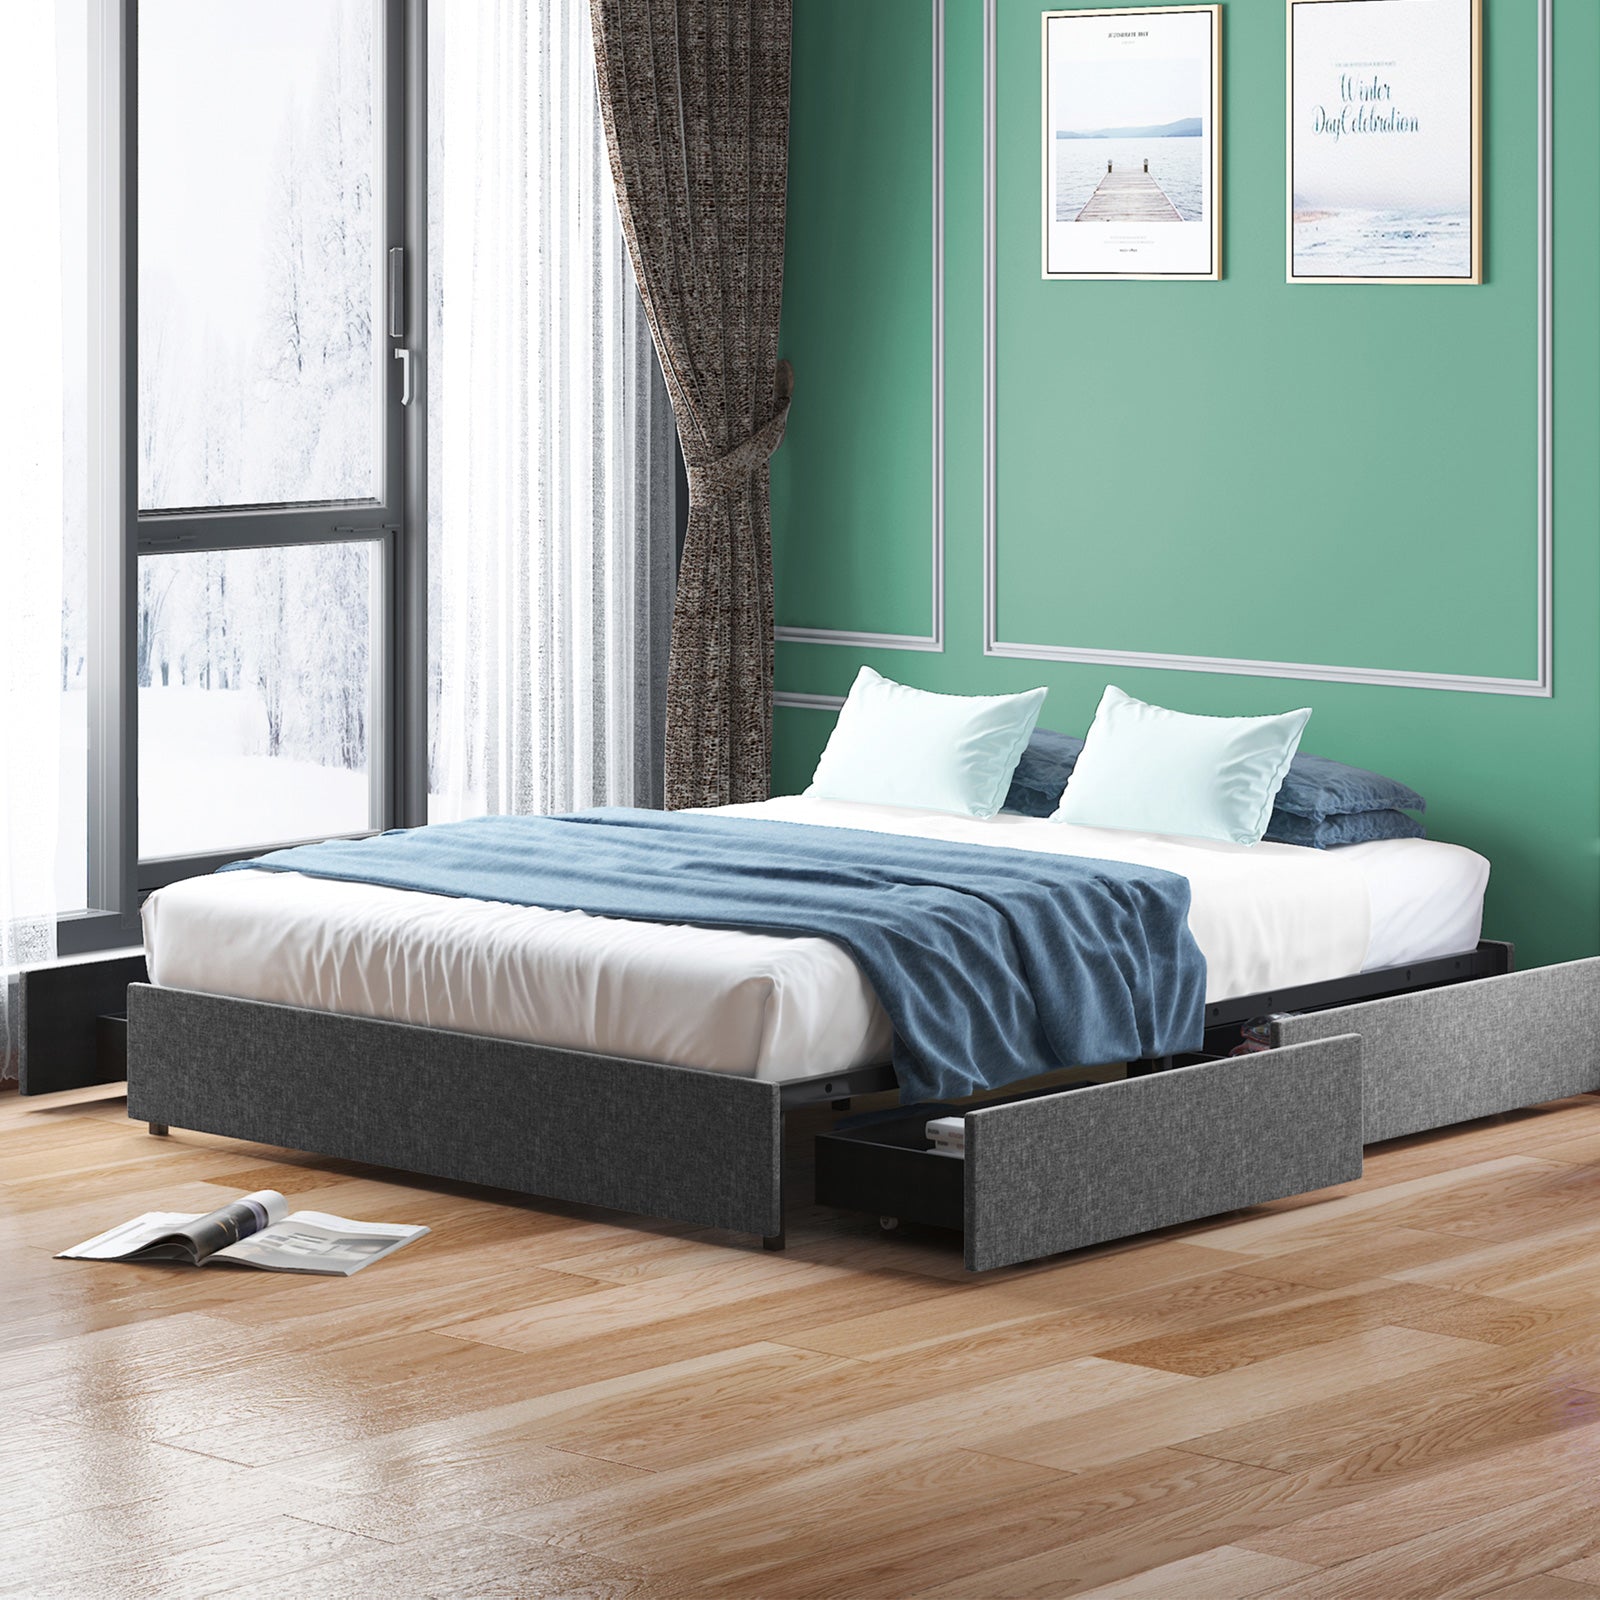 Mjkone Wooden Platform Bed Frame With 4 Drawers